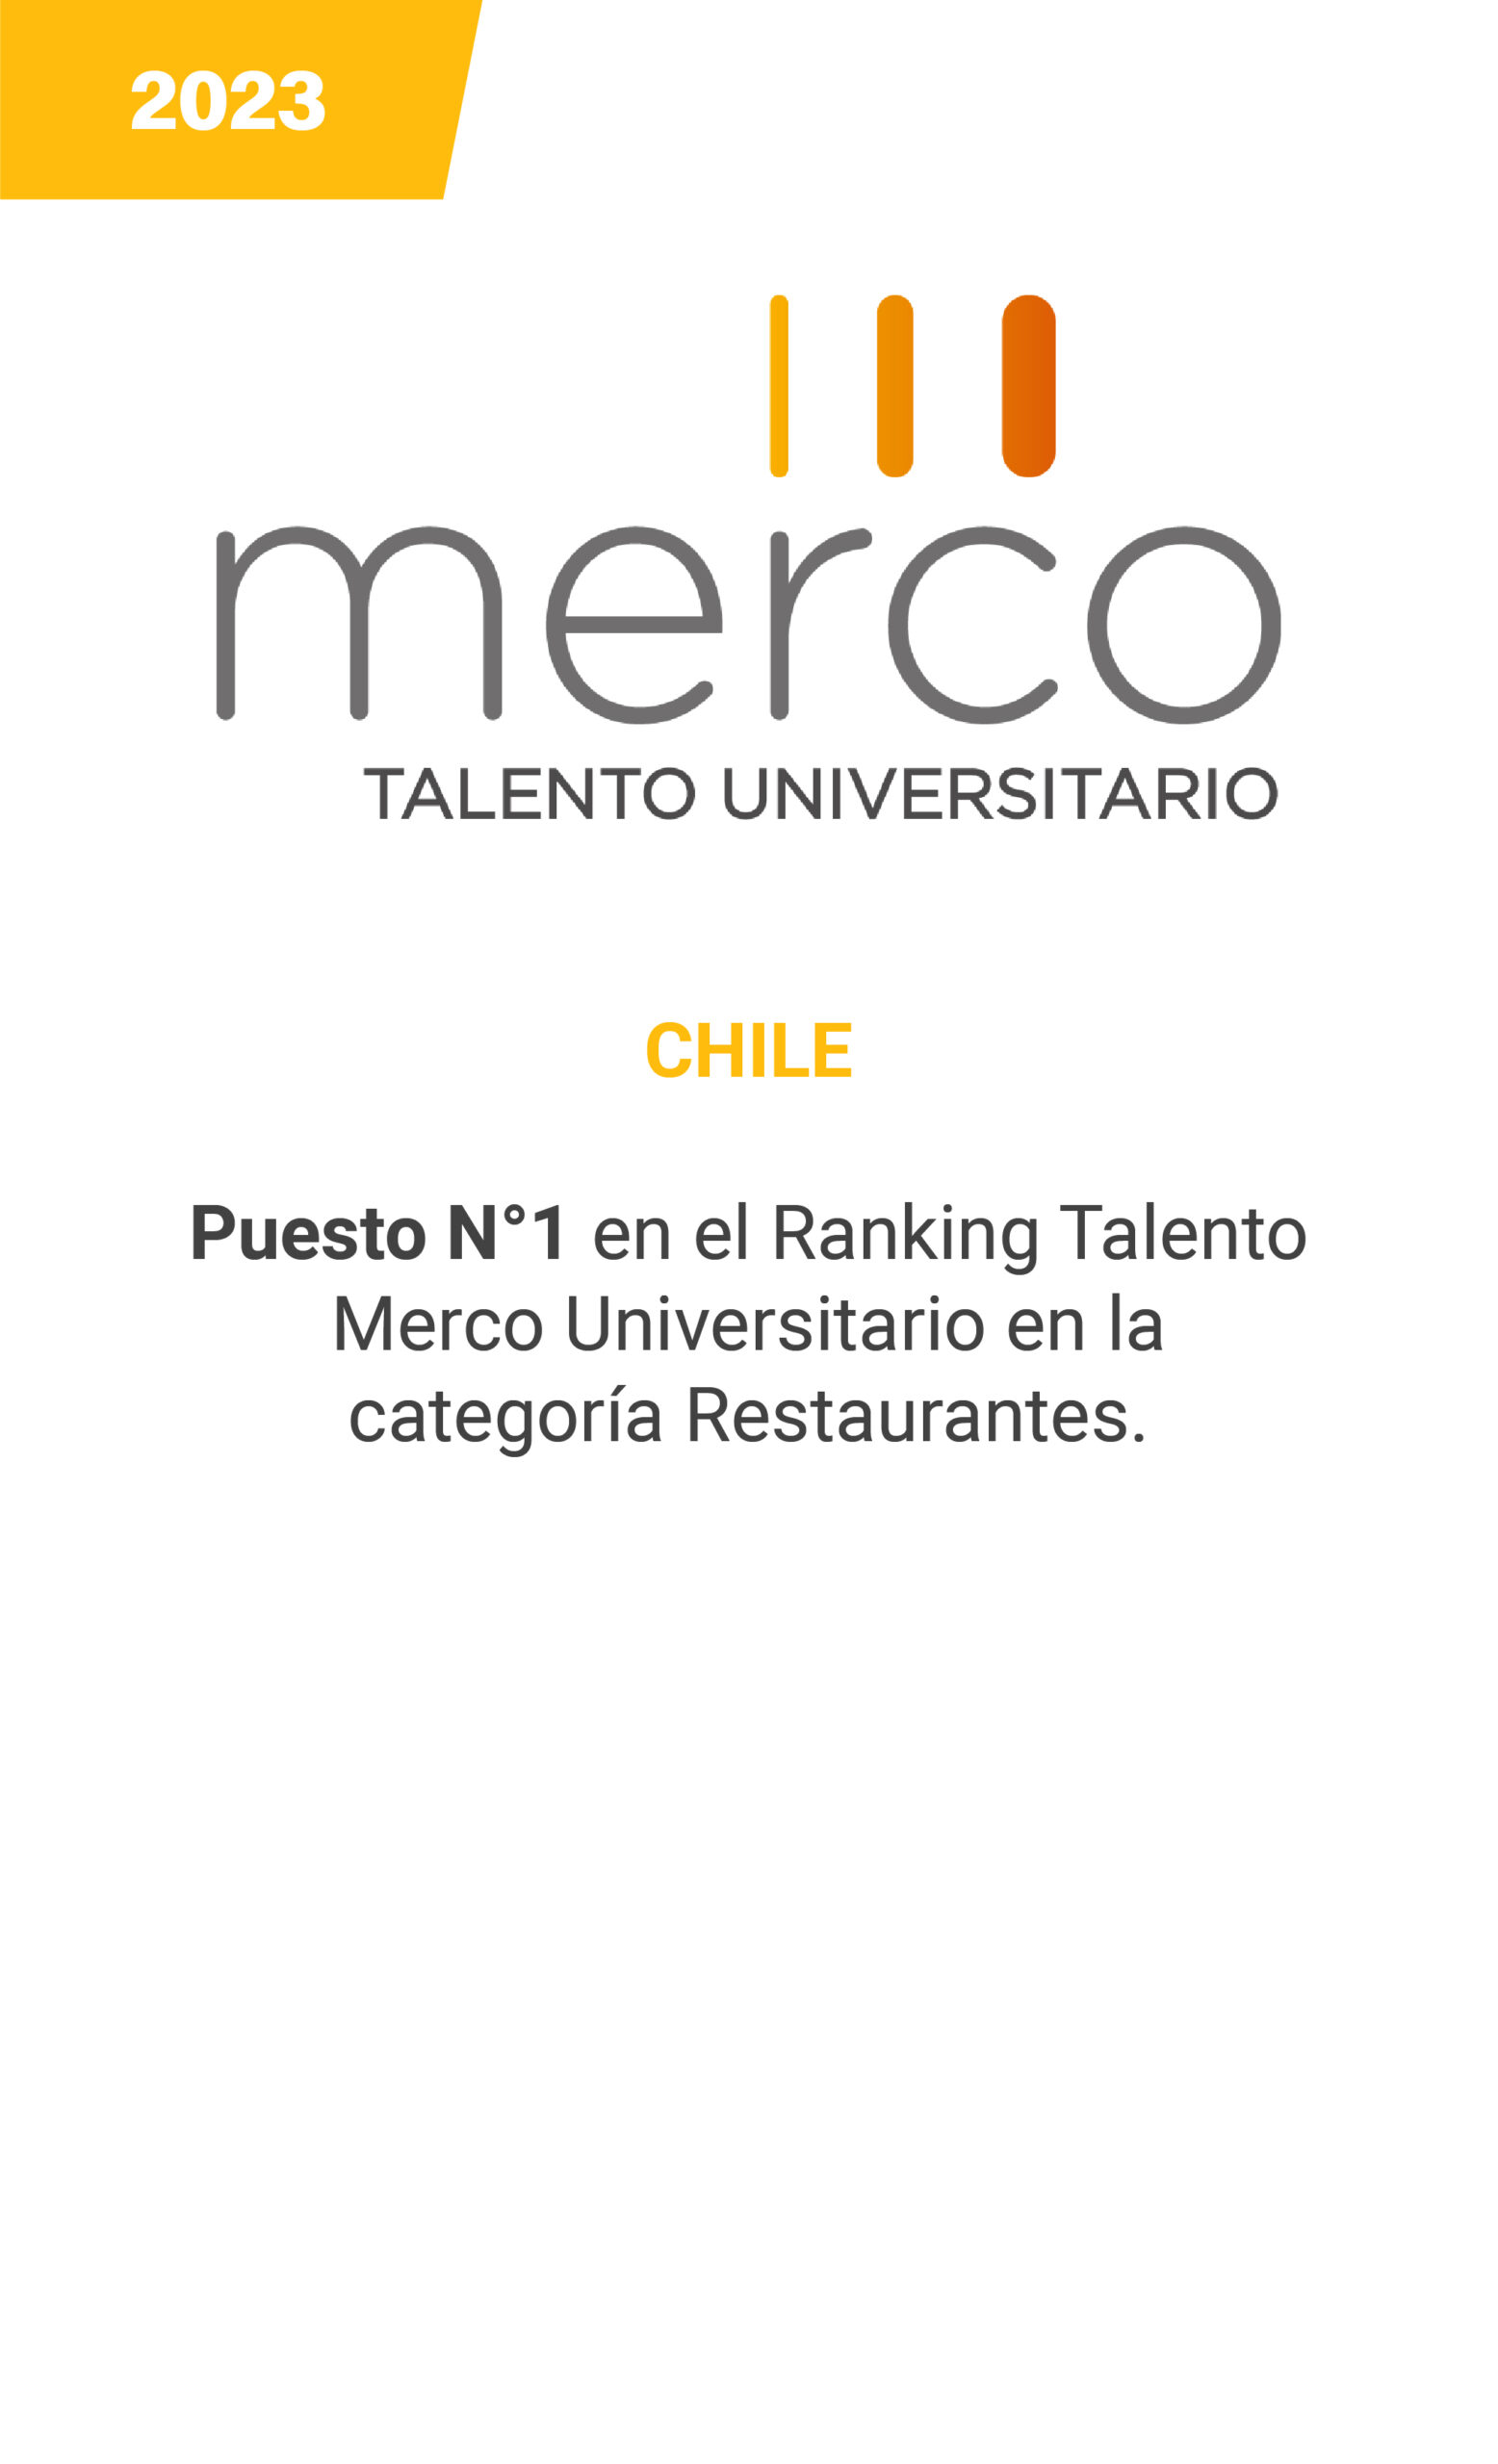 MERCO - Chile - 2023 - mobile